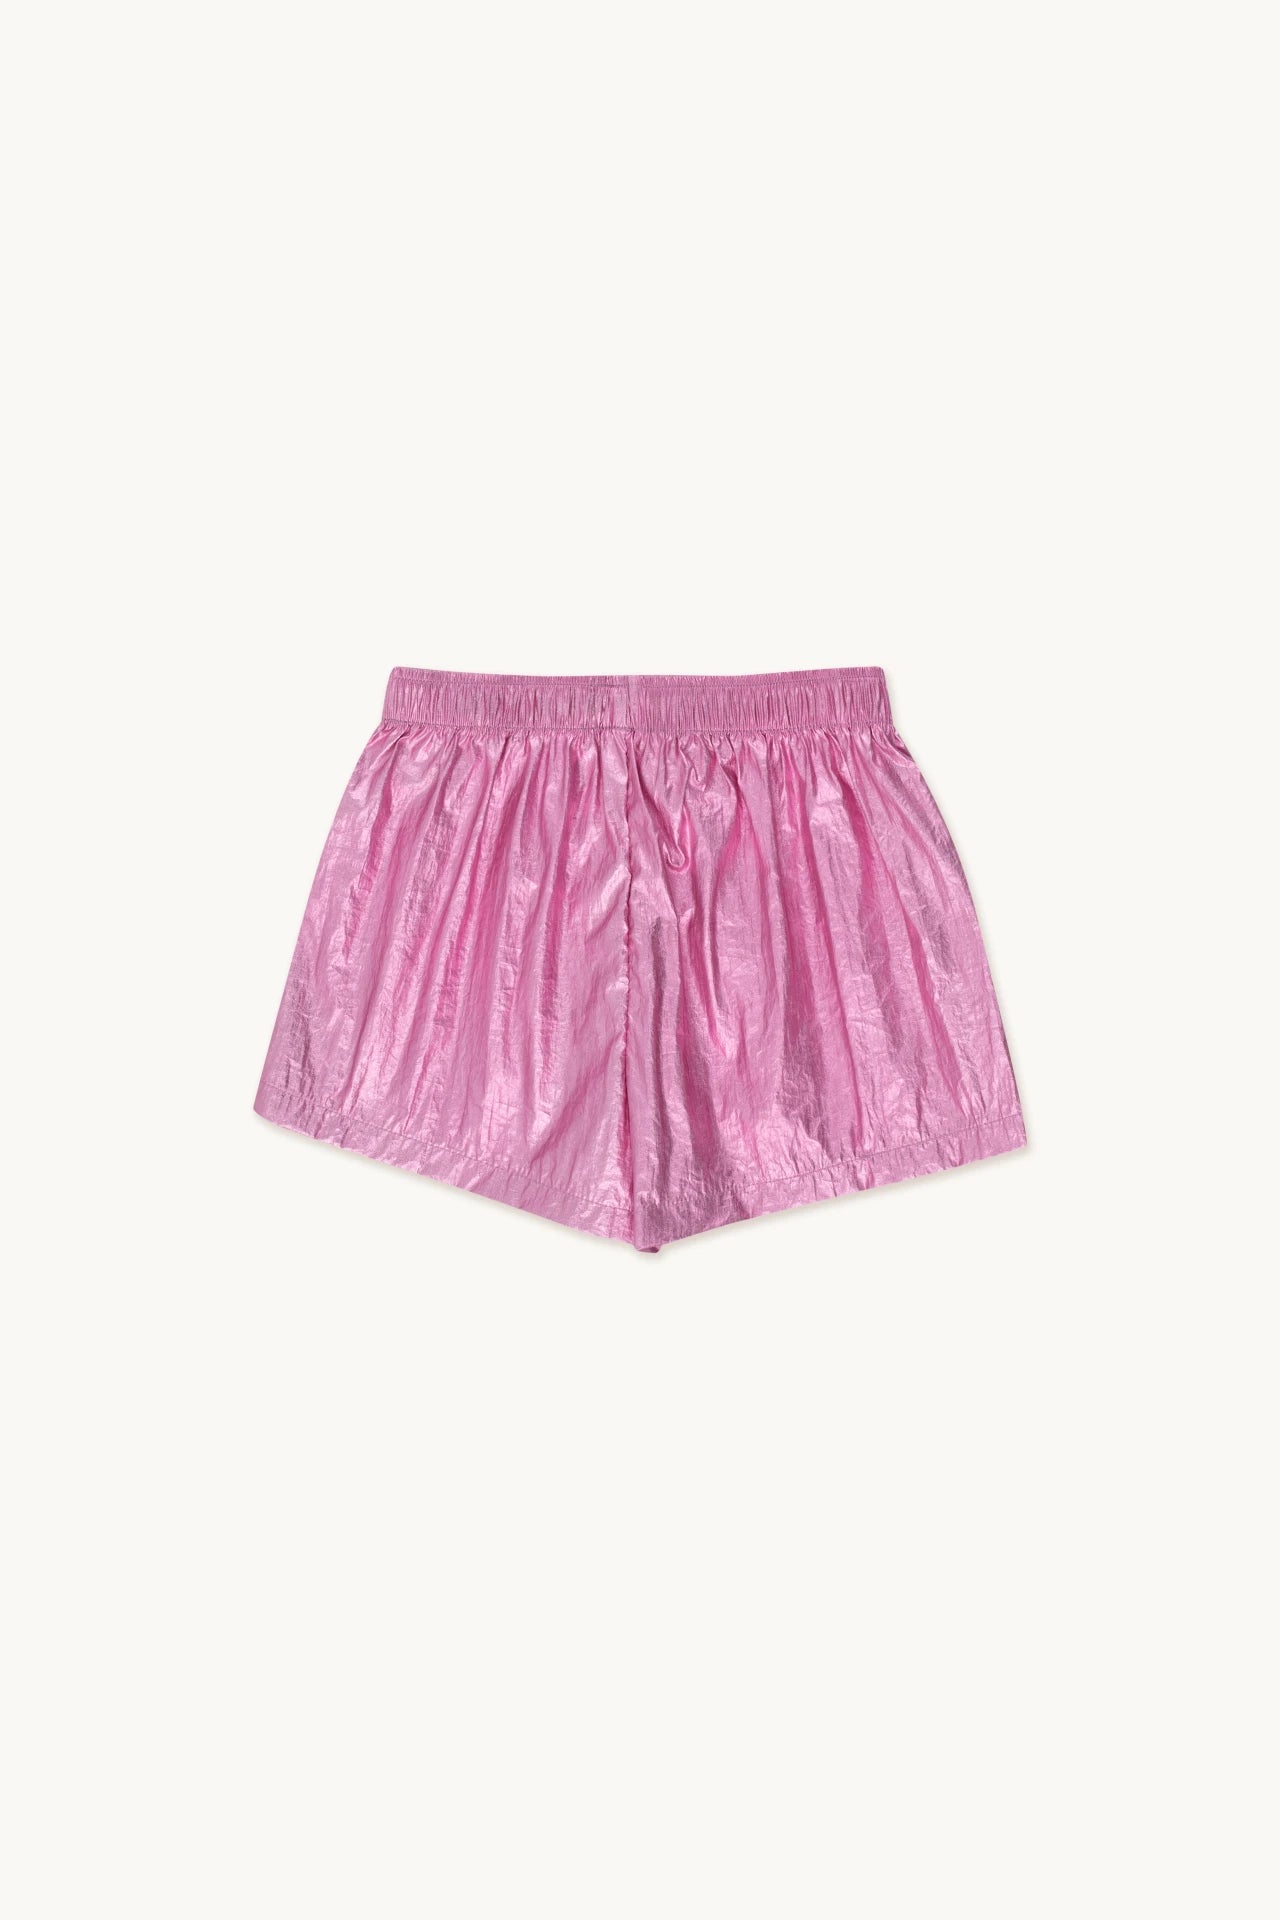 Metallic Pink Shorts